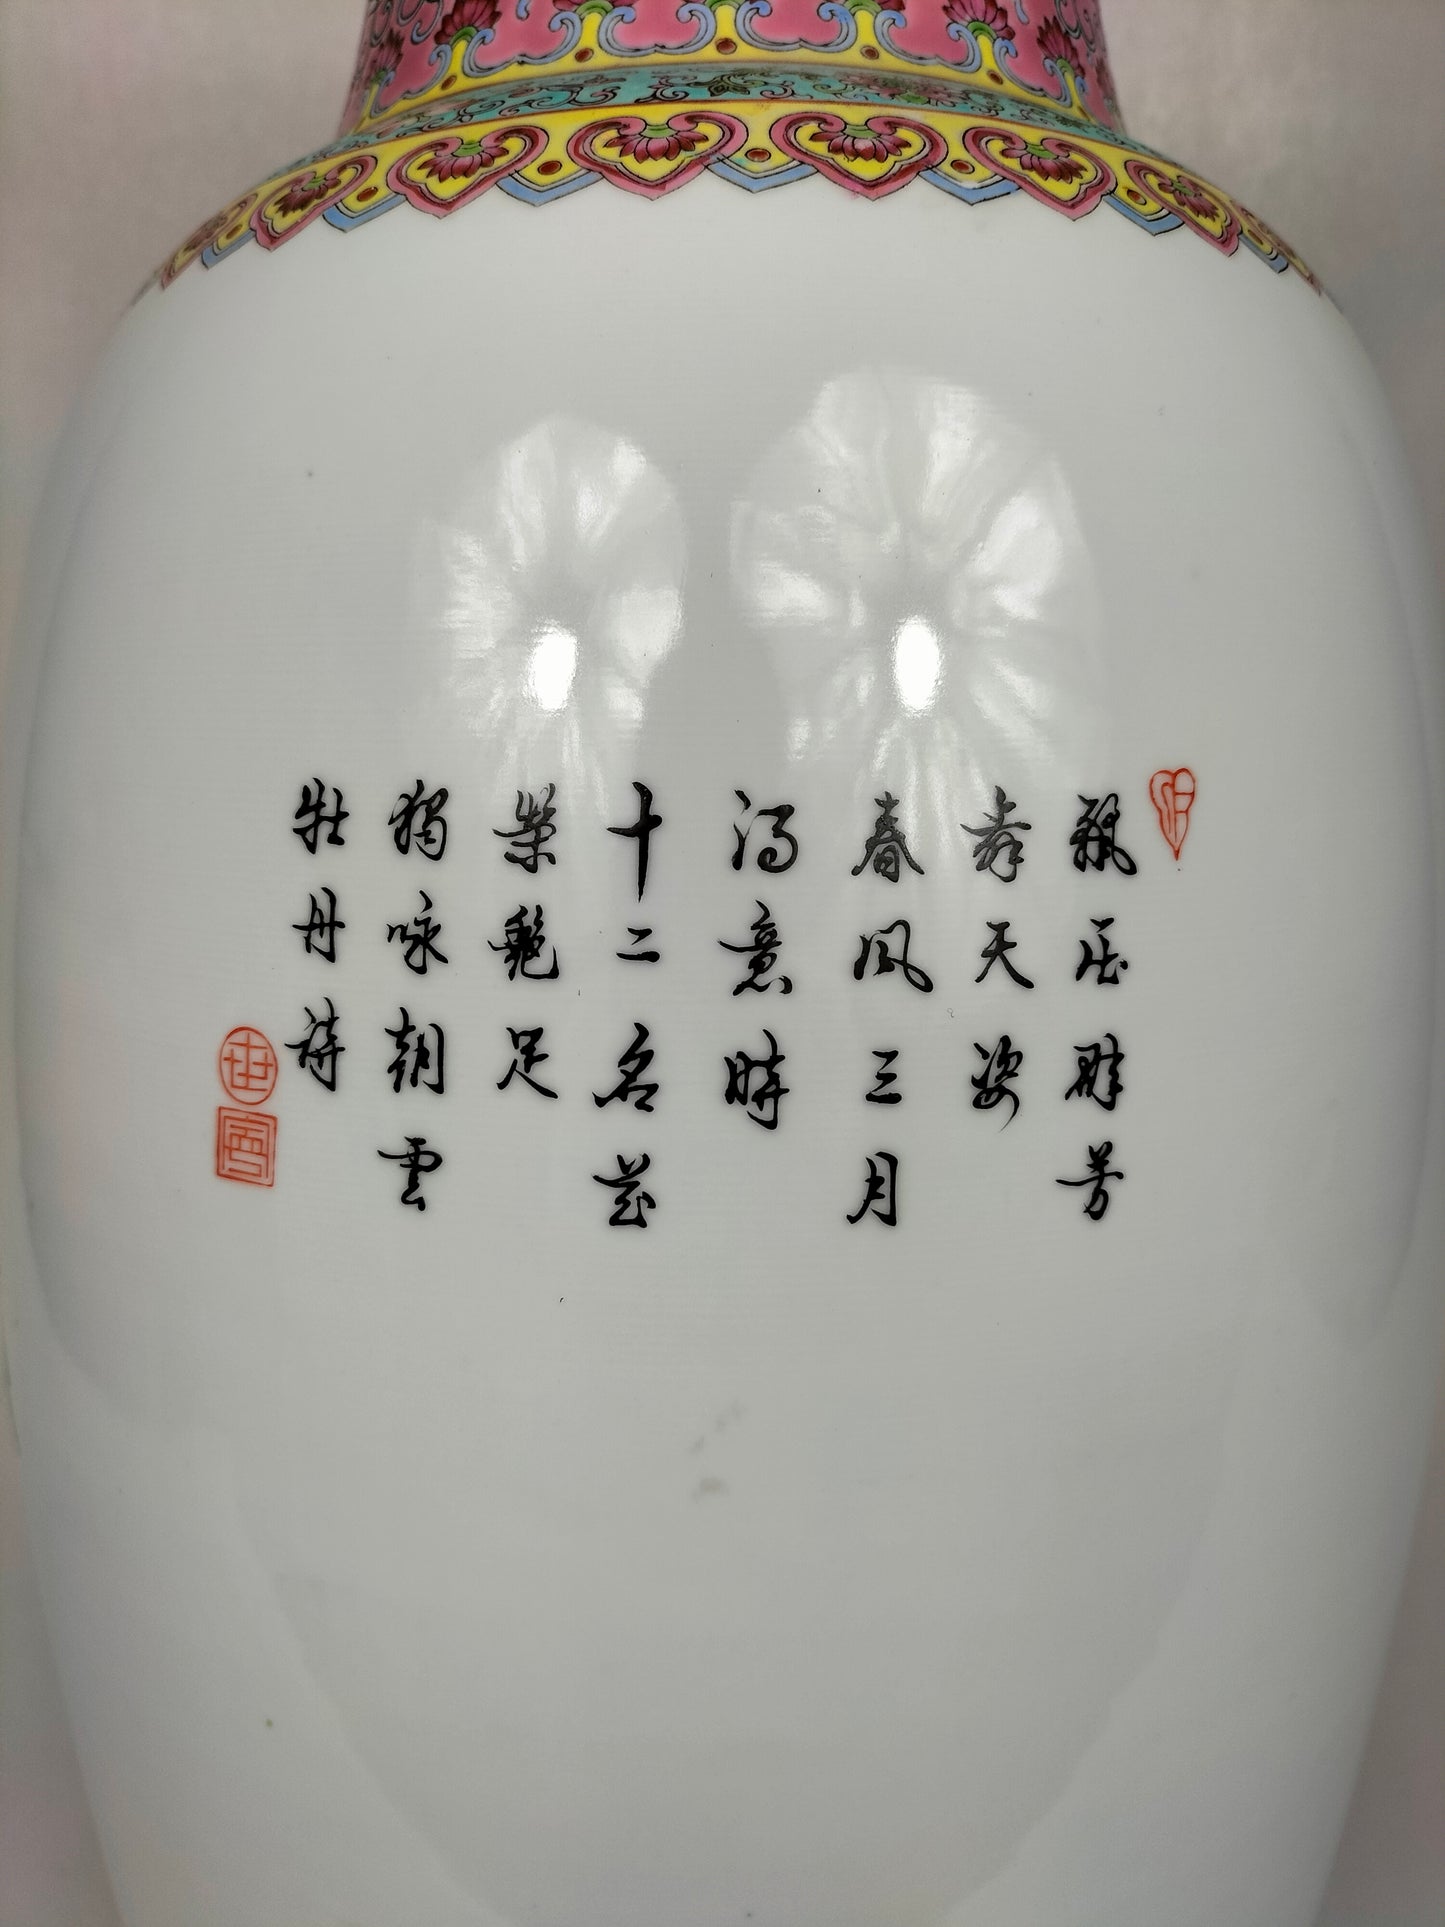 مزهرية ورد عائلية صينية كبيرة مزينة بالزهور // جينغدتشن - القرن العشرين